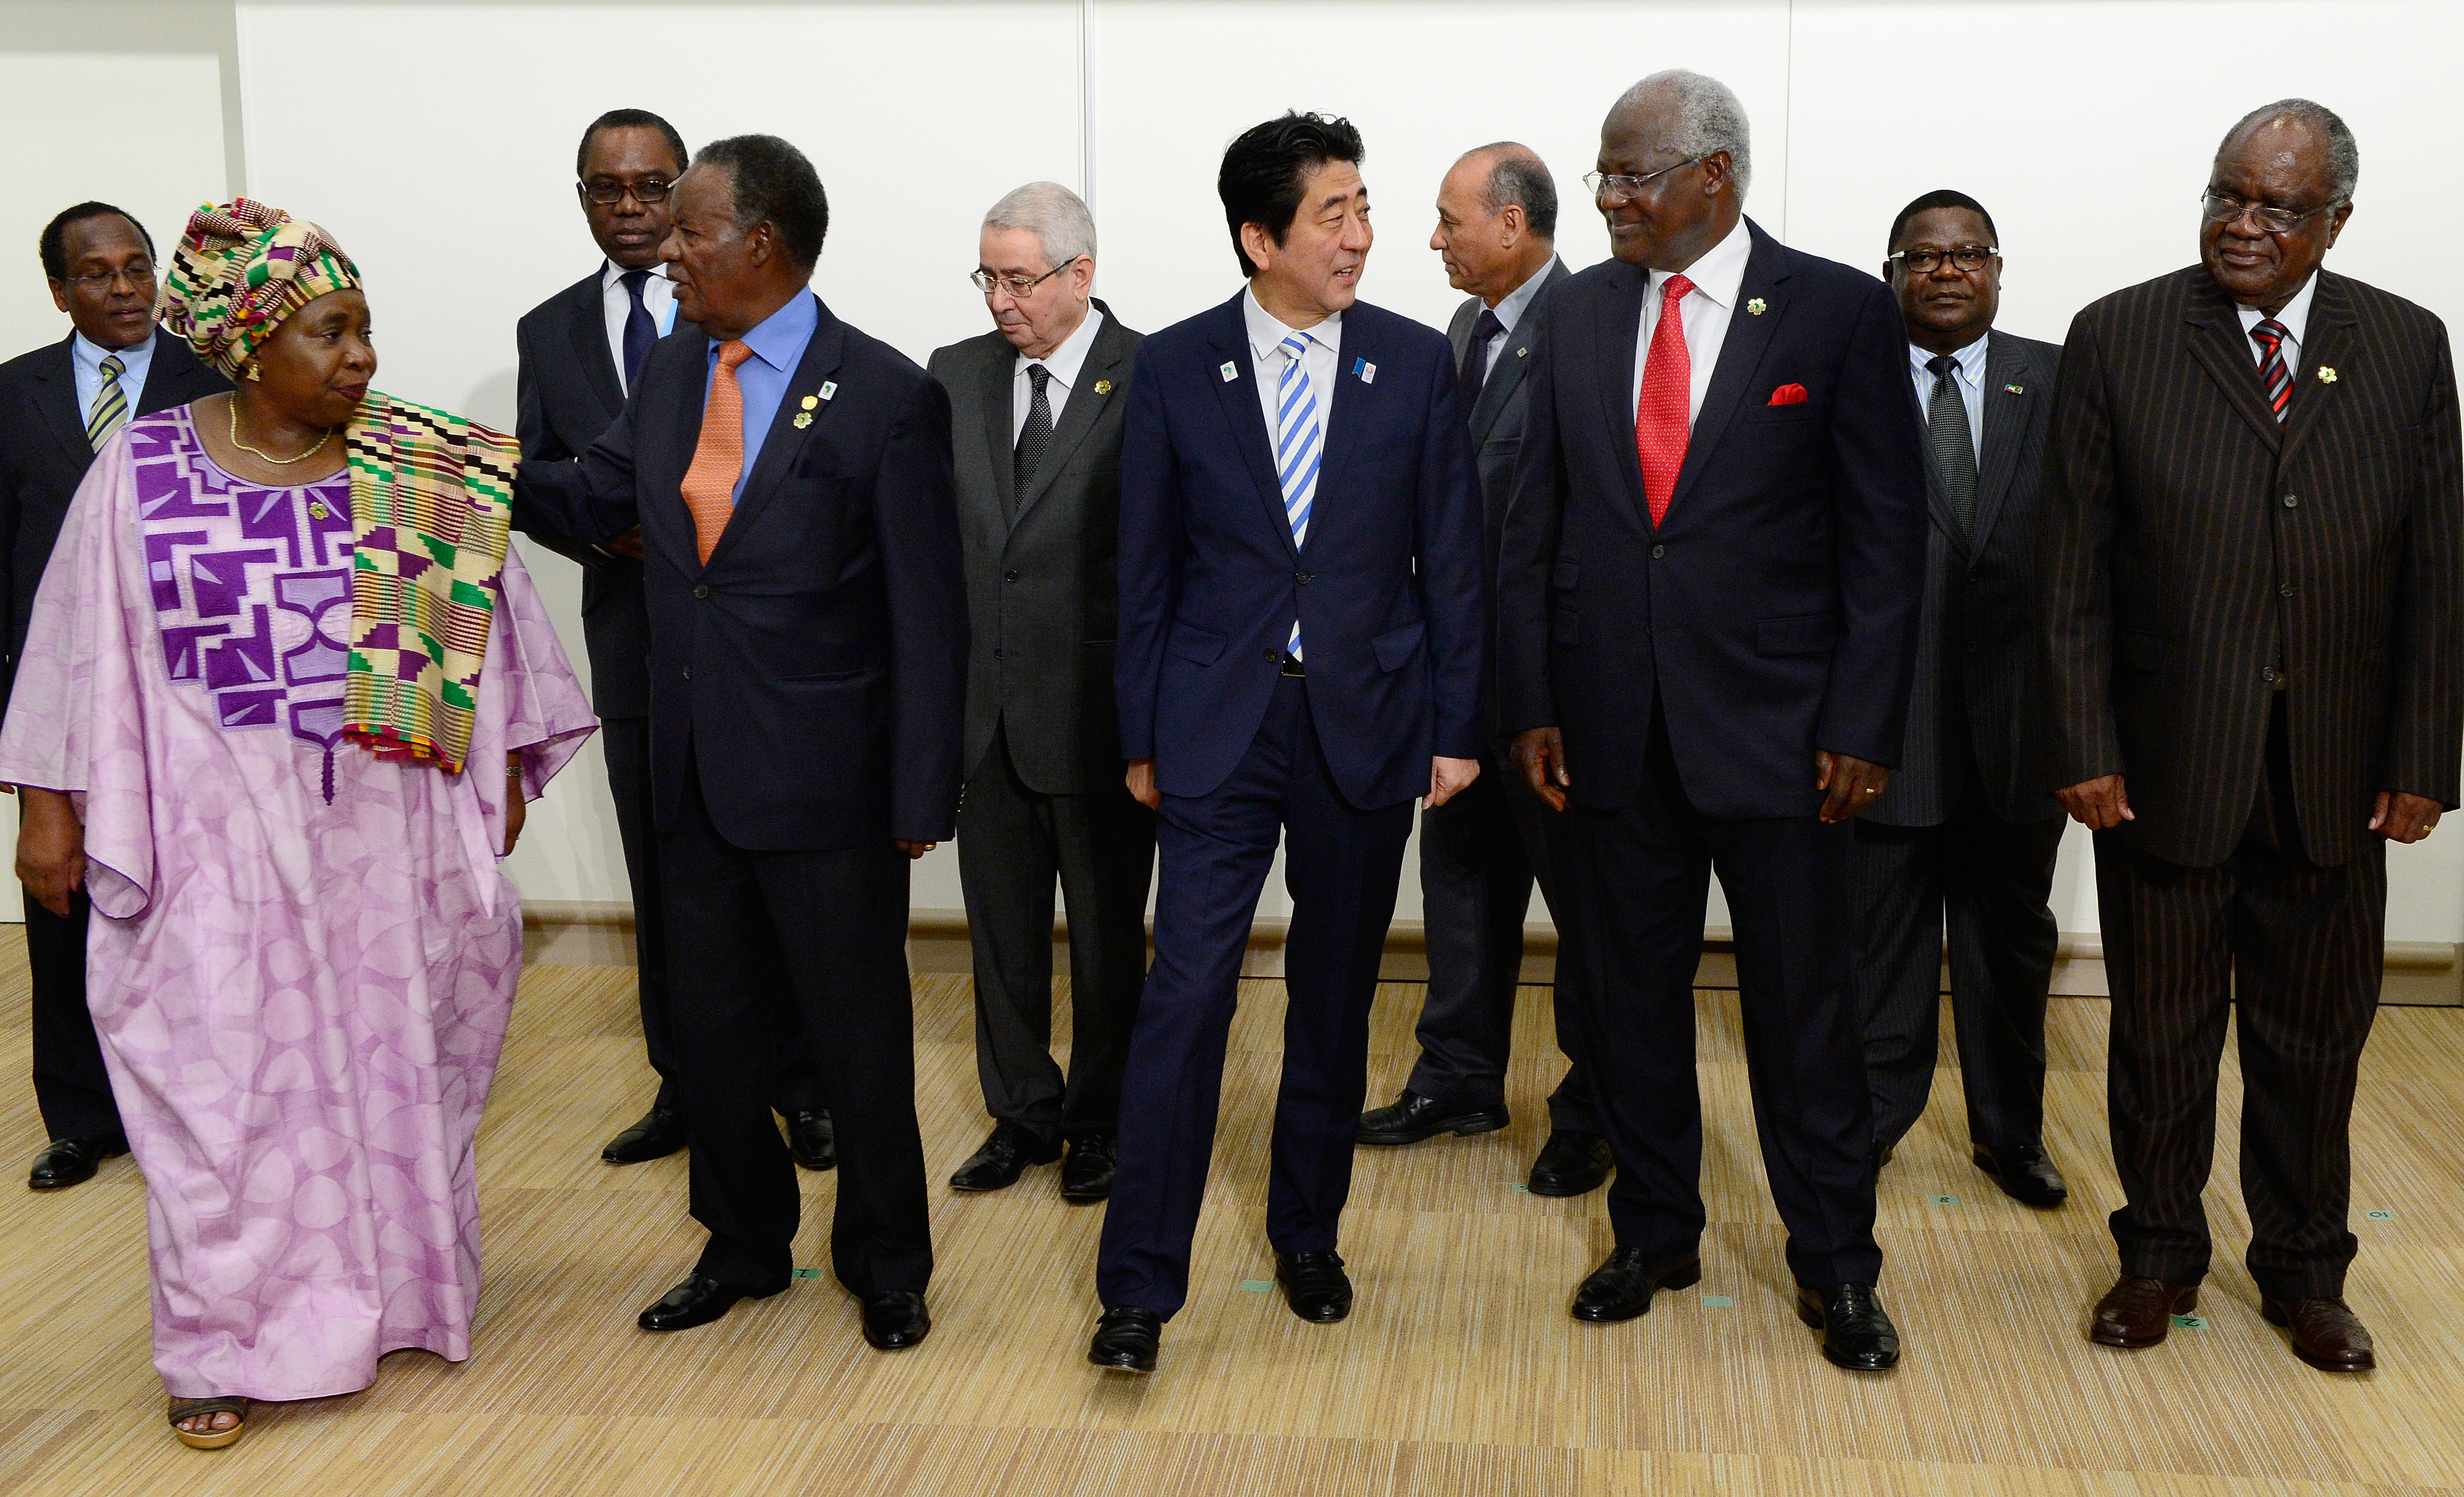 Le Premier Ministre du Japon Shinzo Abe (Devant) avec Le Chef de l'Etat Sierra-Léonais, Président Ernest Bai Koroma (Devant à droite), Le Président de la Commission de l'Union Africaine Nkosazana Dlamini-Zuma (Devant à gauche) ainsi que d'autres représentants de divers pays africains avant le sommet Afrique-Japon sur la réforme du Conseil de Sécurité des Nations Unies lors de la Tokyo International Conference on African Development (TICAD) à Yokohama, le 3 juin 2013. AFP PHOTO / Toru YAMANAKA